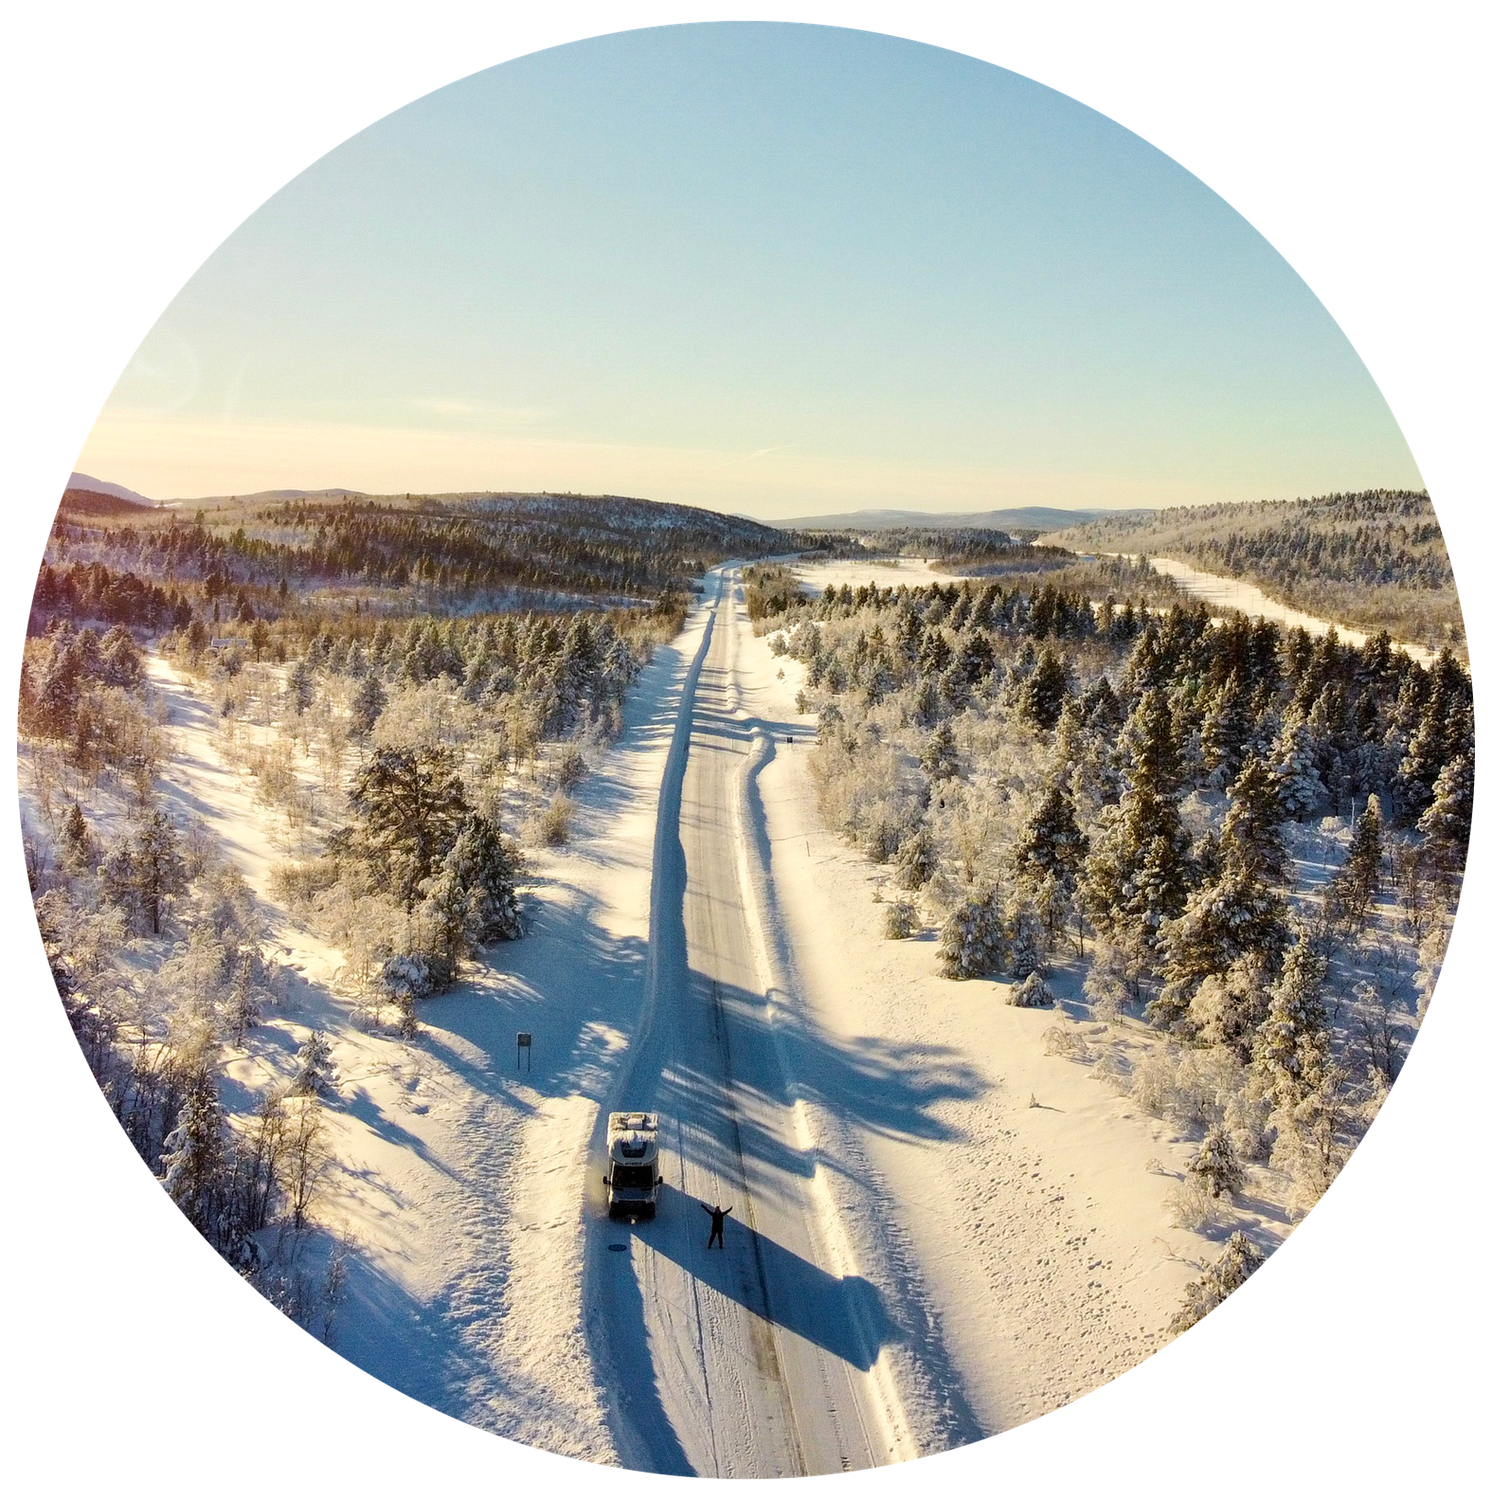 Meine Abenteuerreise durch das Winterwonderland Lappland